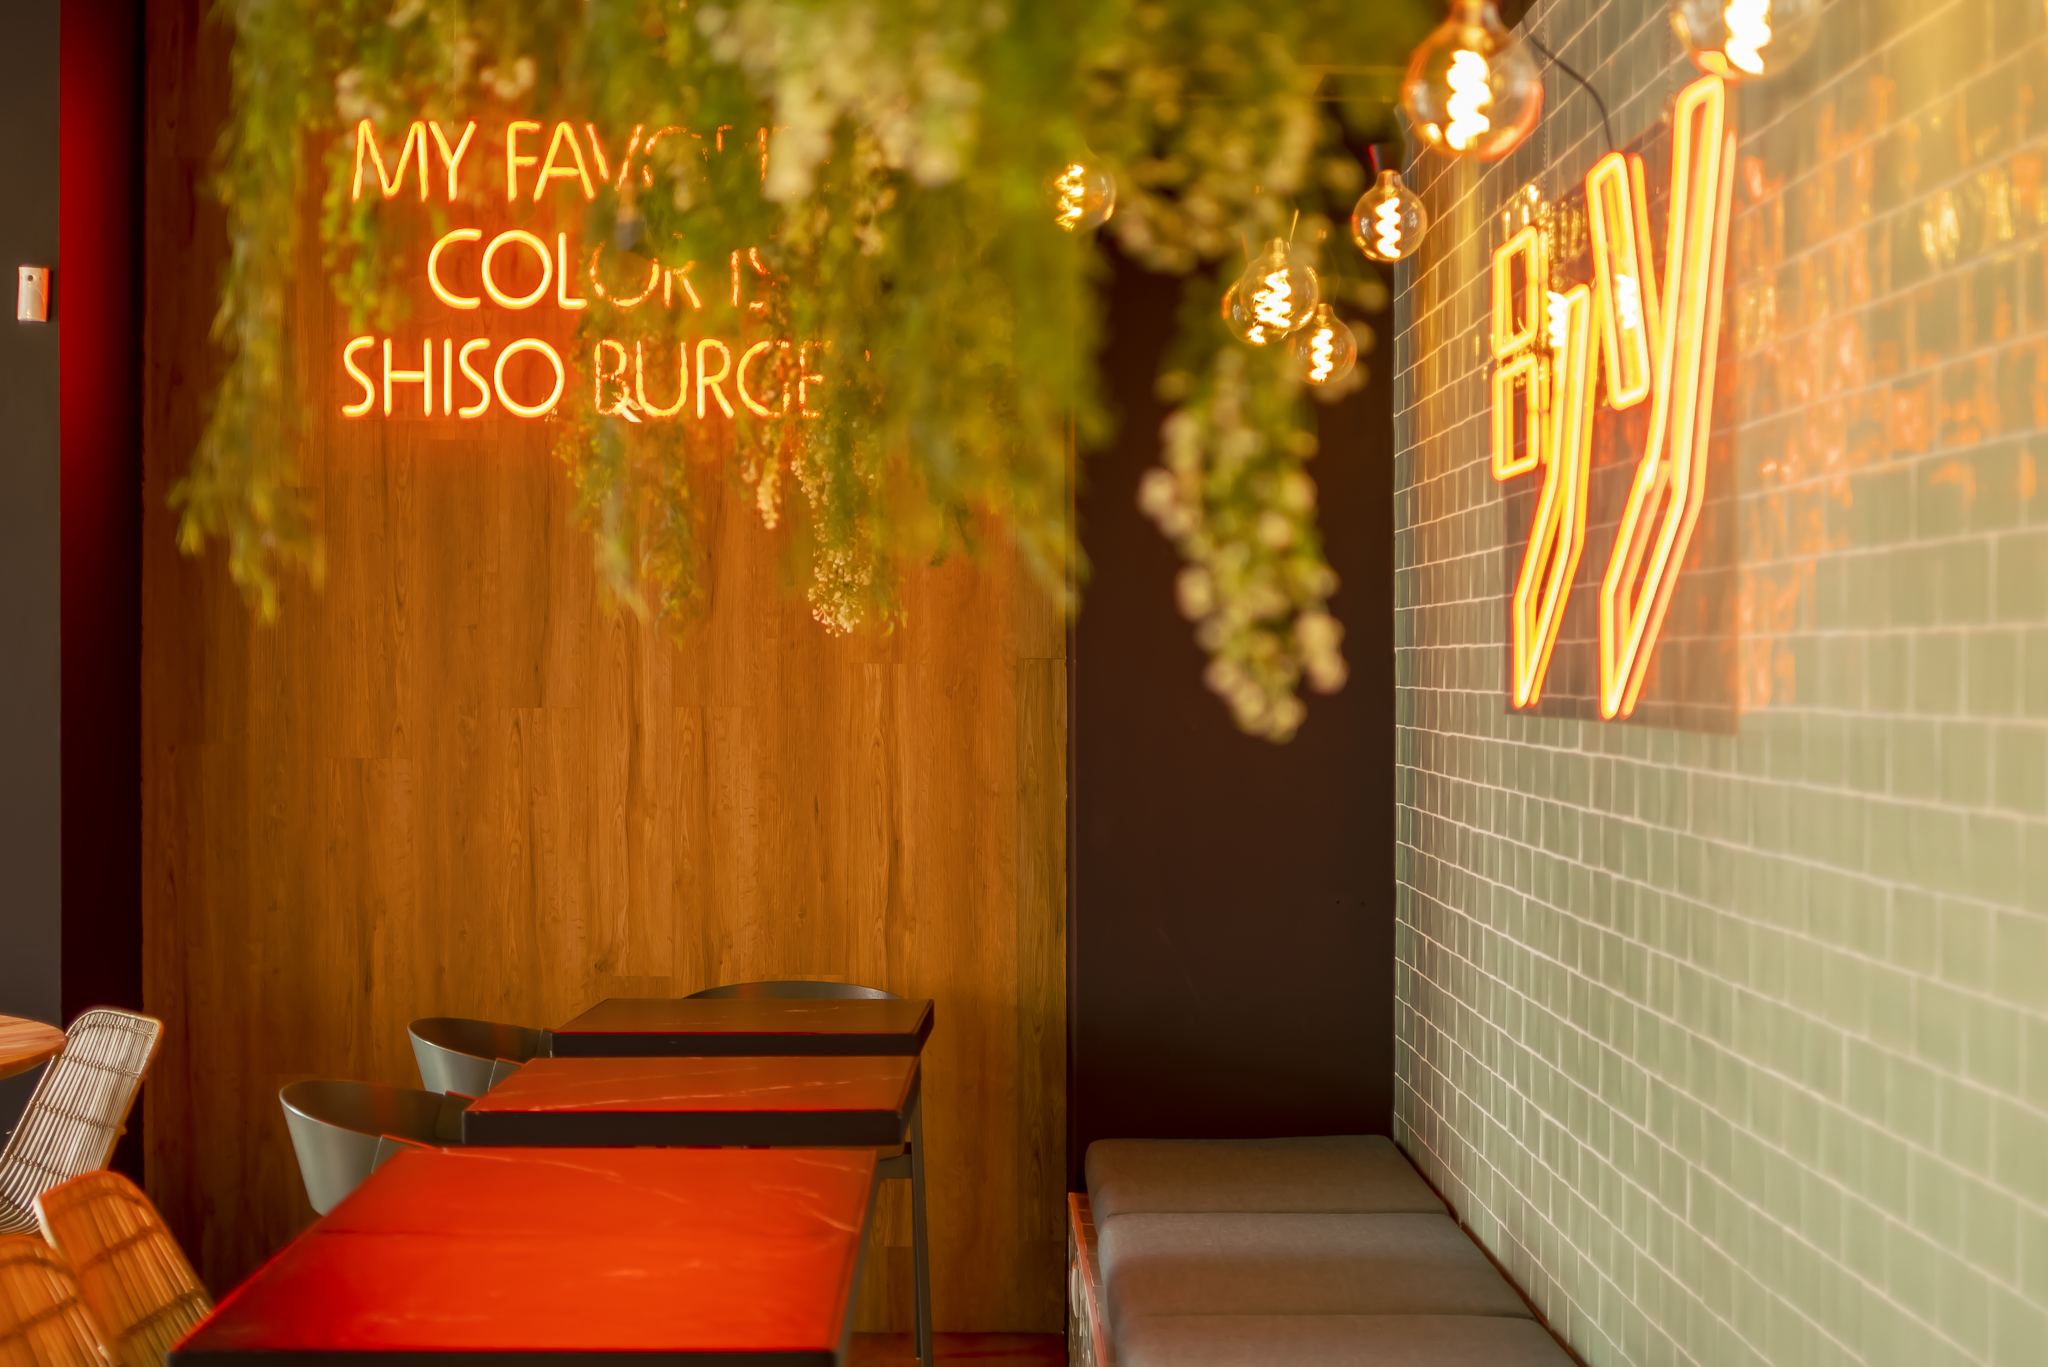 Decoração de interiores de um restaurante com estilo eclético, mas contemporal com neons laranjas e paredes com azulejos e detalhes em bambú; paleta de cores vibrante; hamburgueria gourment; Shiso Burger.